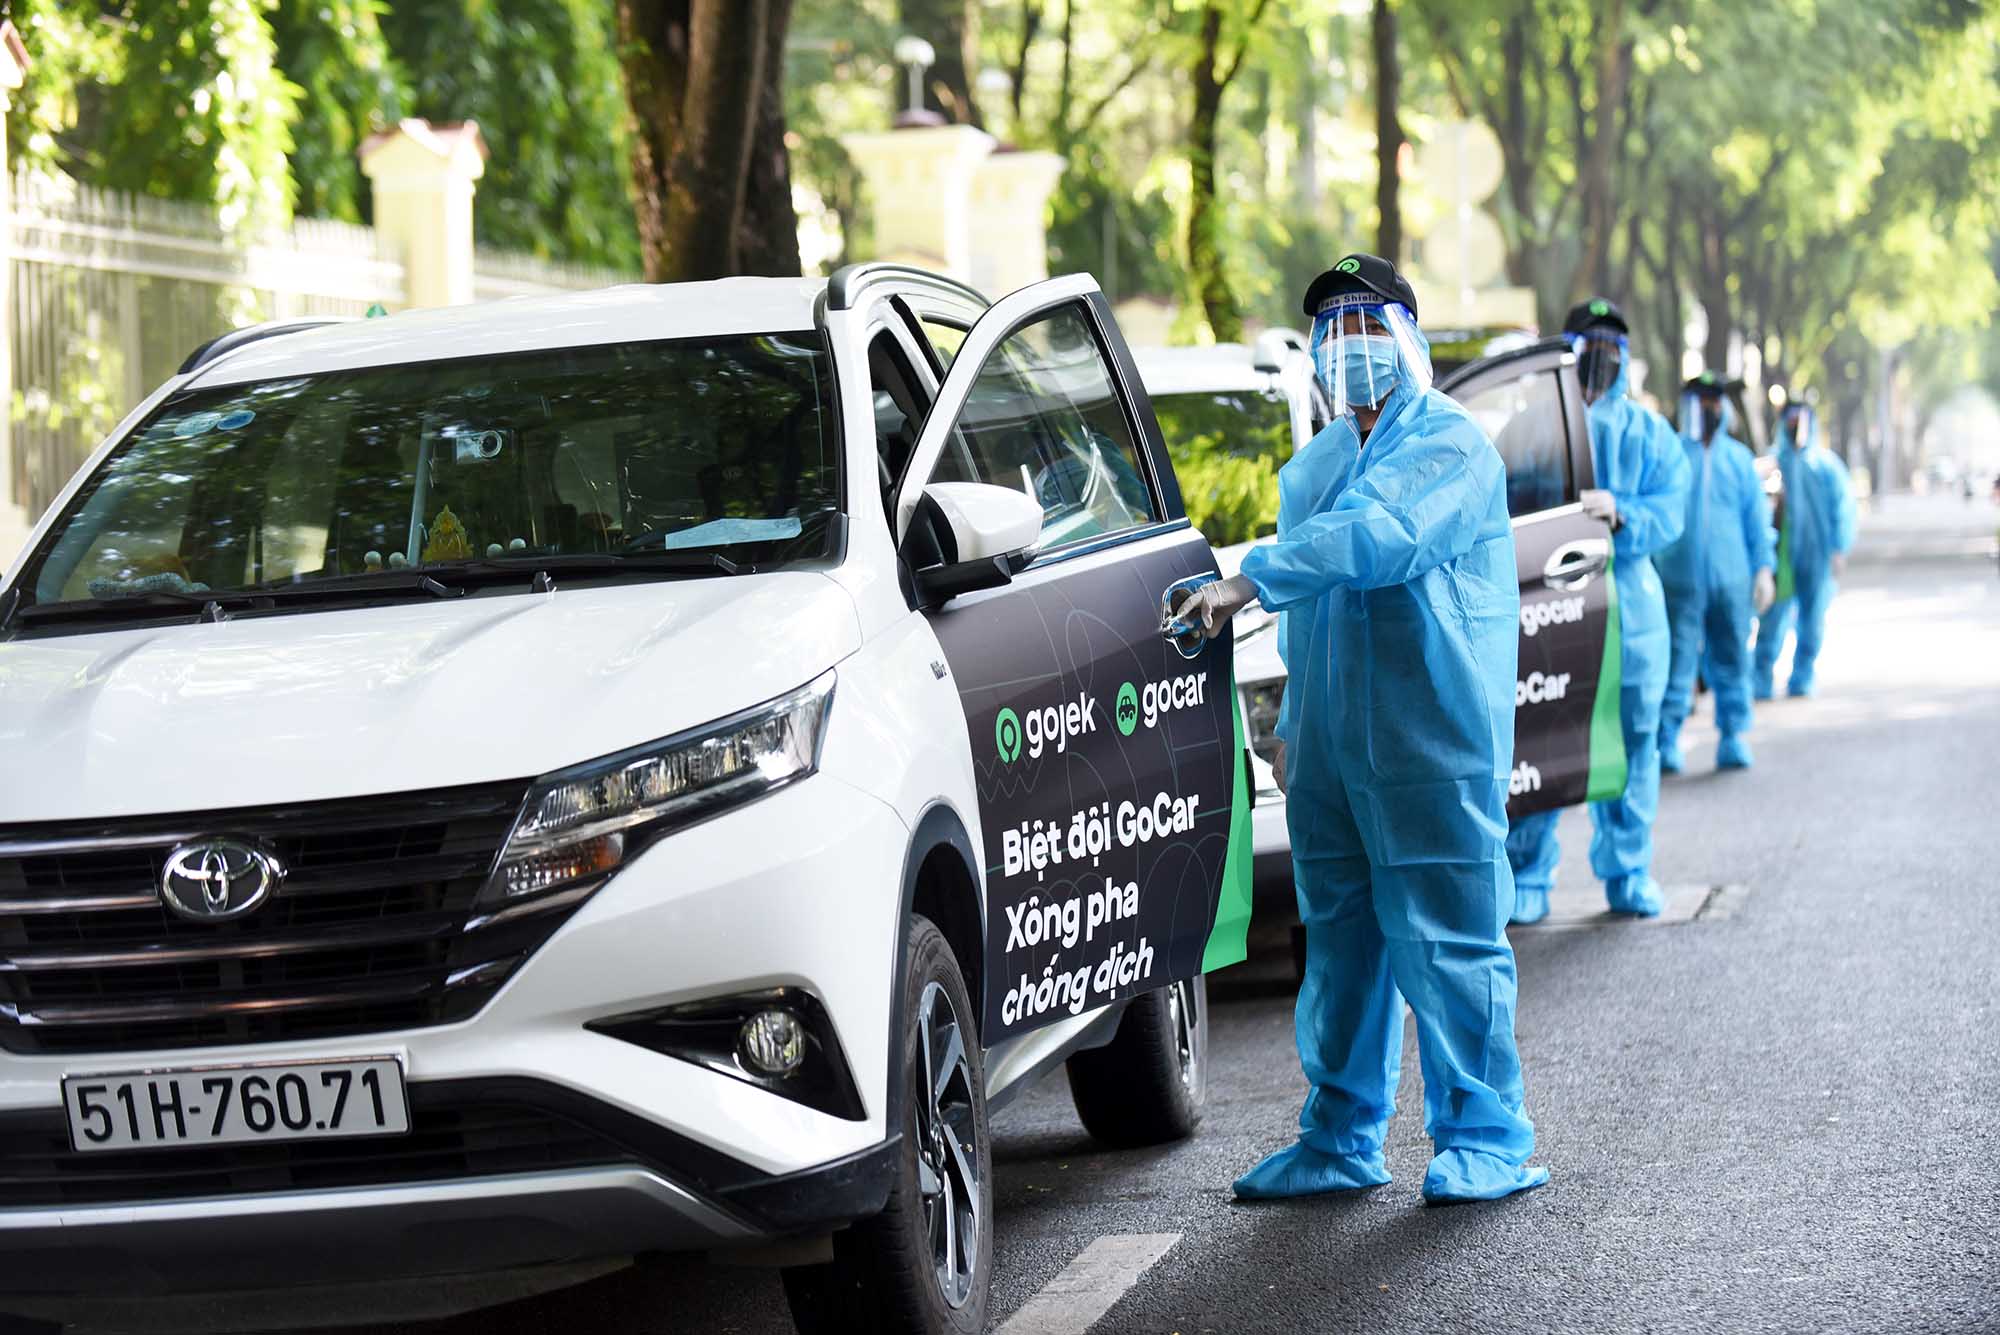 Gojek ra mắt GoCar nhằm hỗ trợ lực lượng y tế tuyến đầu ở Thành phố Hồ Chí Minh